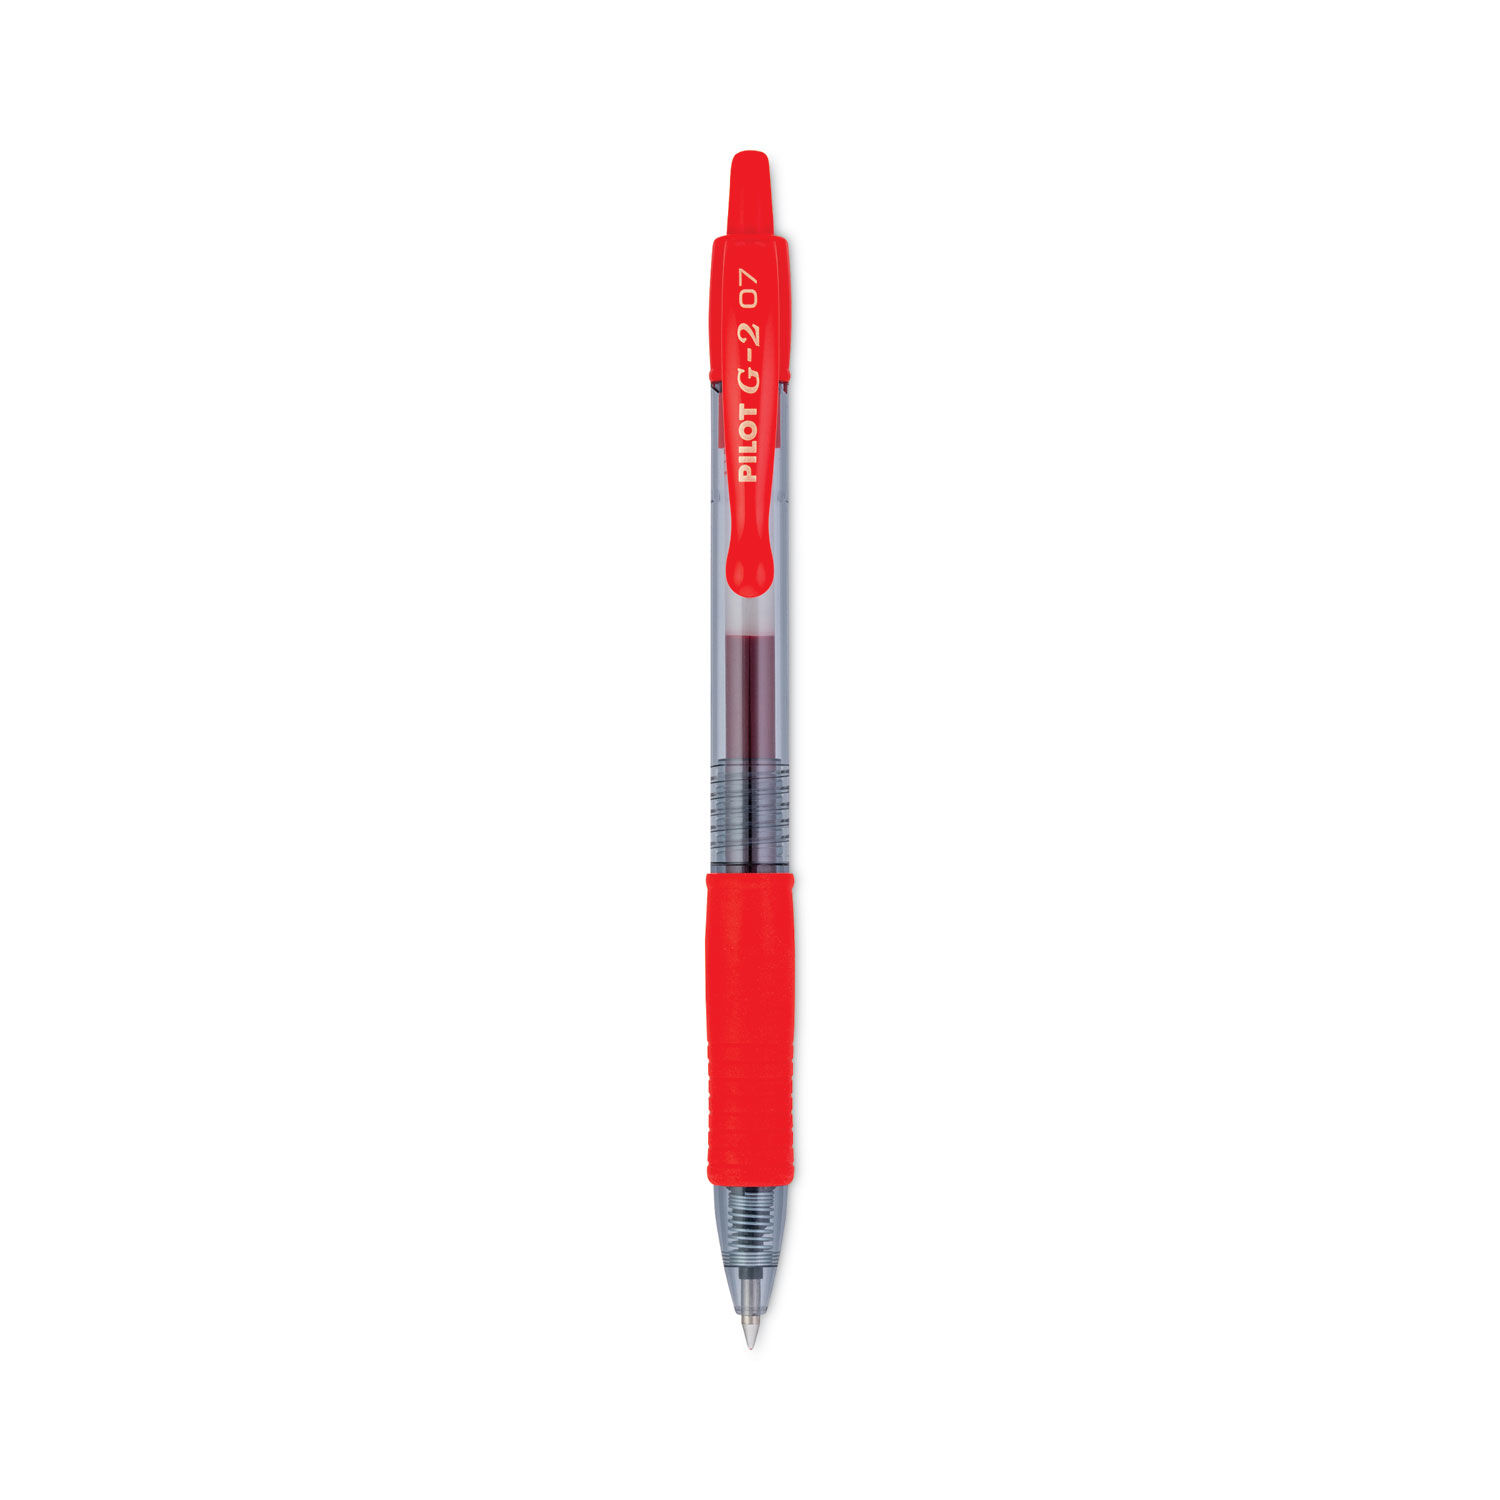 G2 Premium Gel Pen by Pilot® PIL31022